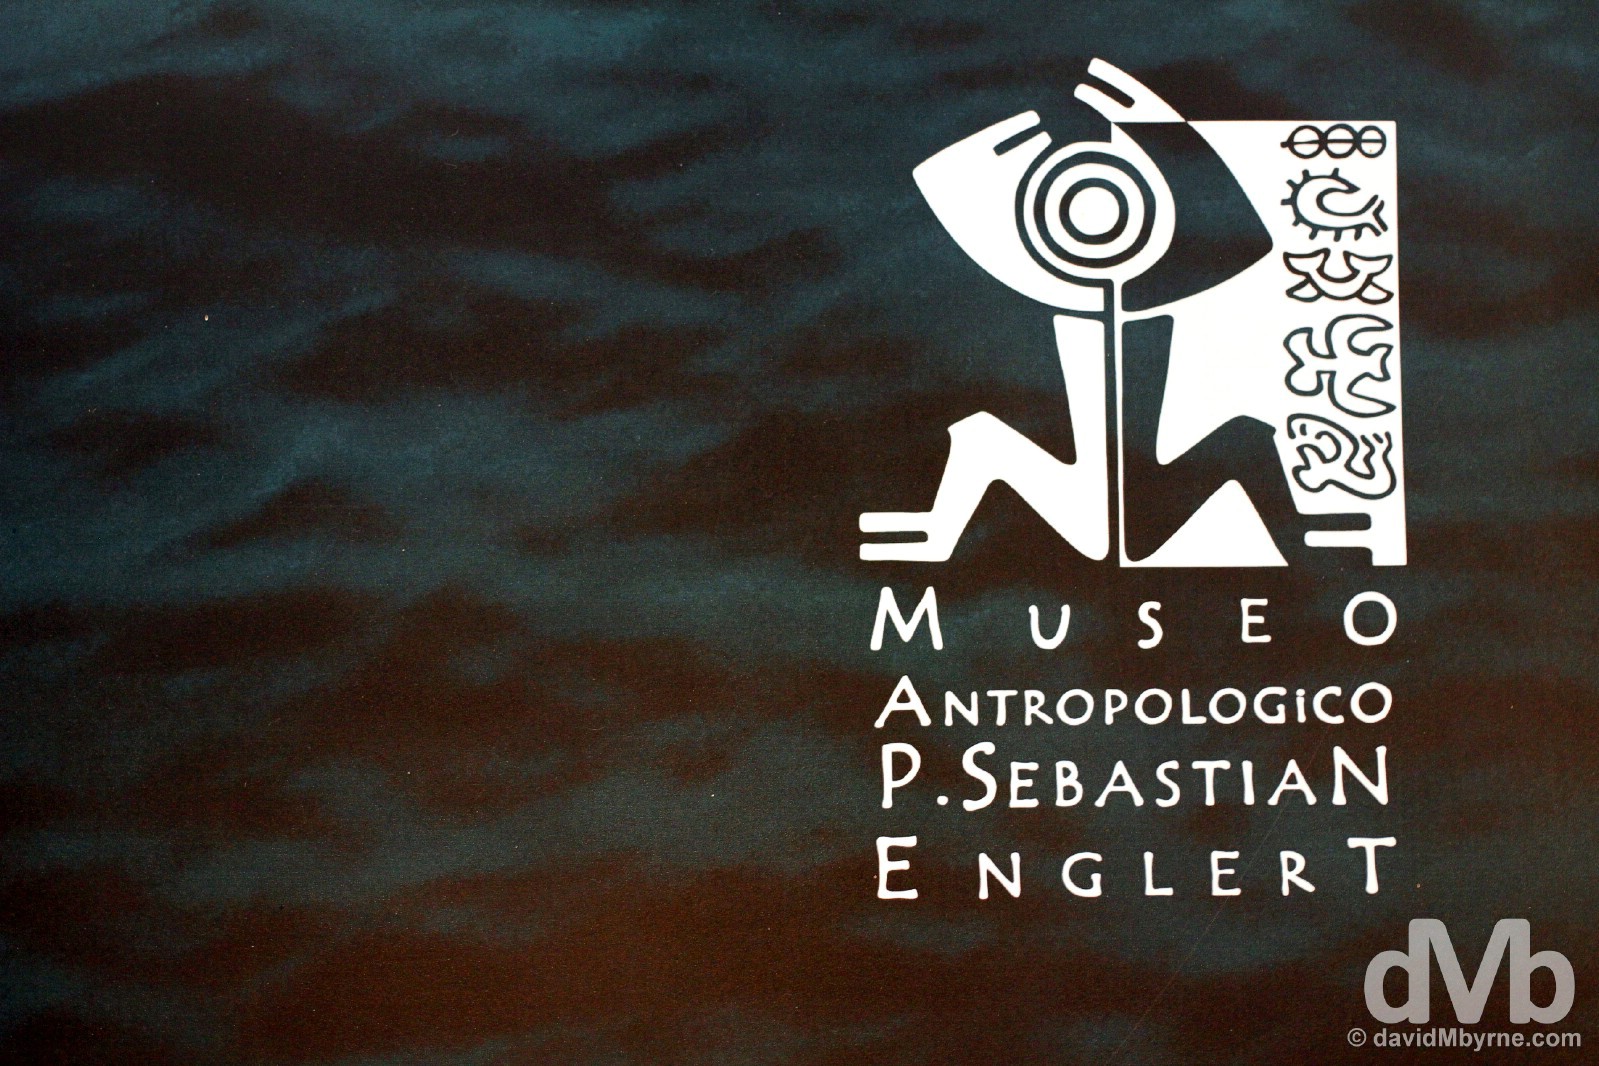 Museo Antropologico P. Sebastian Englert, Hanga Roa, Easter Island, Chile. September 30, 2015.